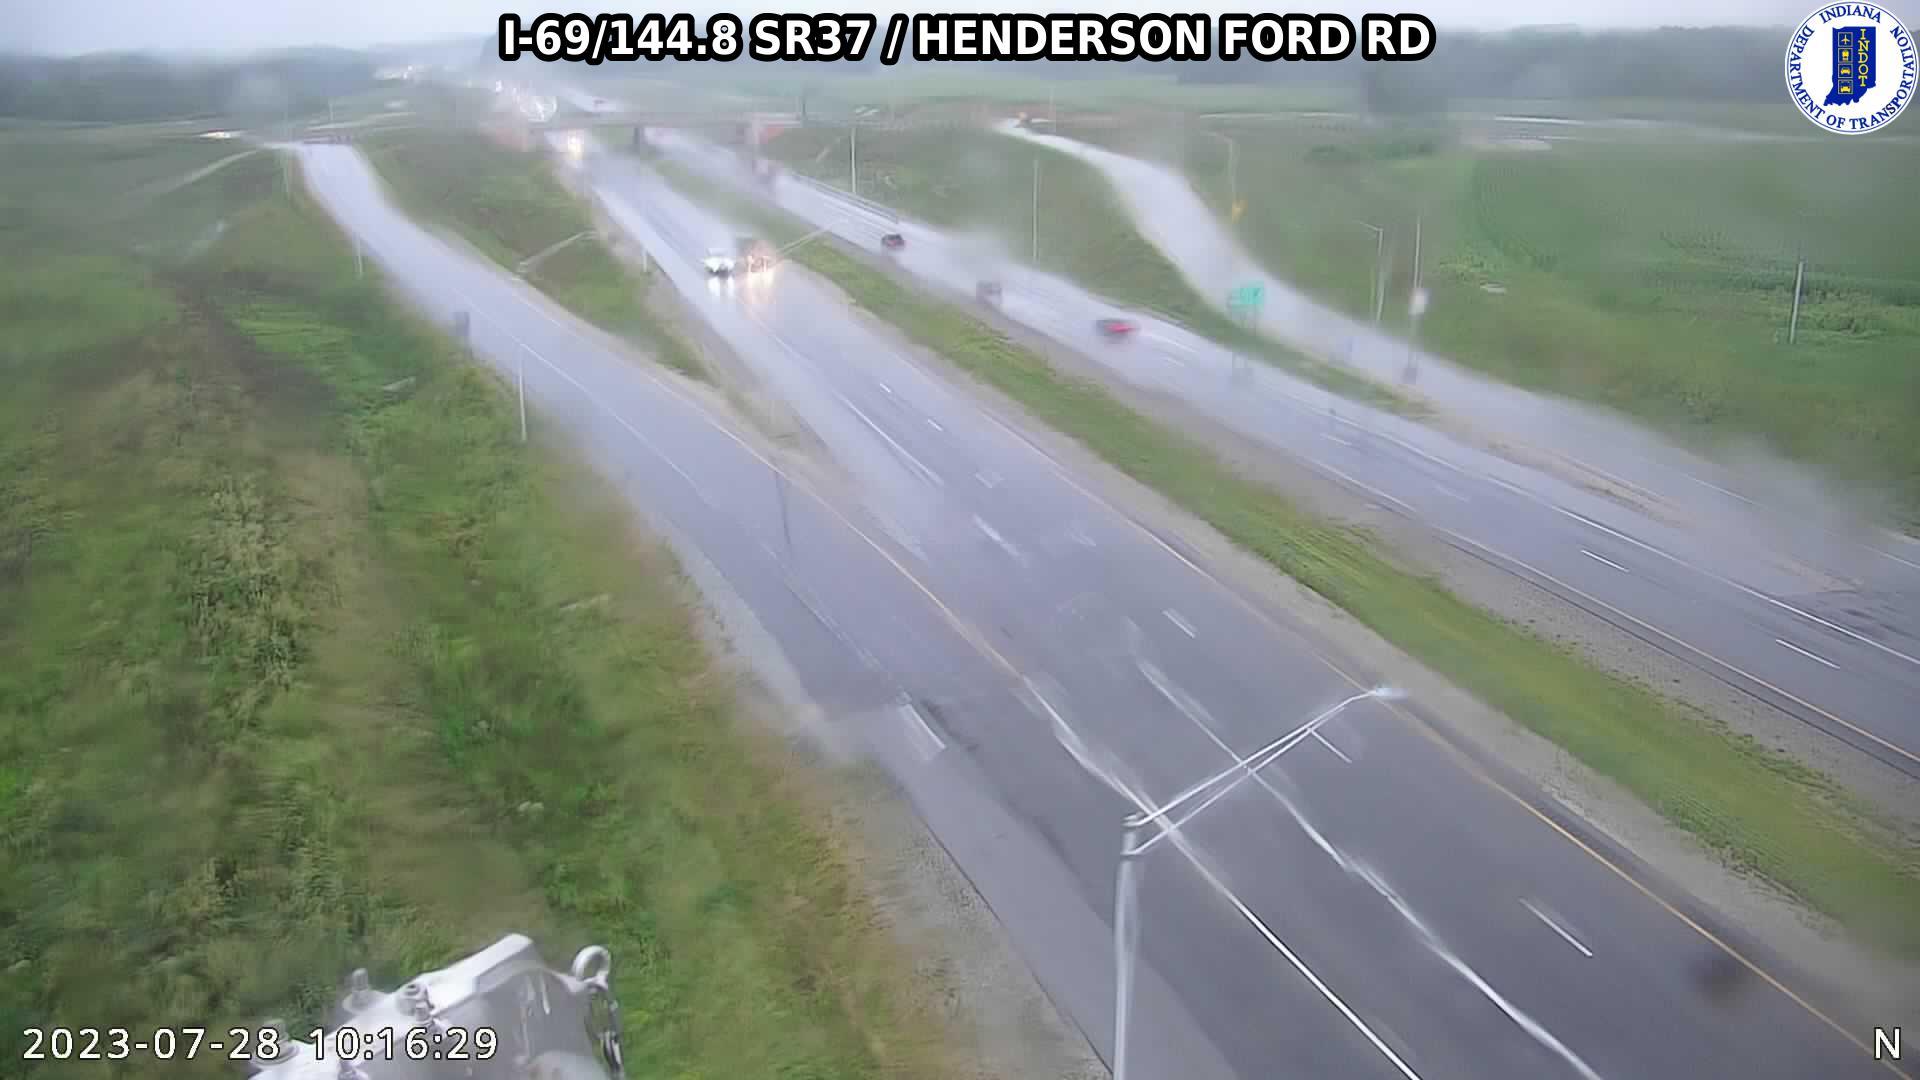 Adams: I-69: I-69/144.8 SR37 - HENDERSON FORD RD: I-69/144.8 SR37 - HENDERSON FORD RD Traffic Camera